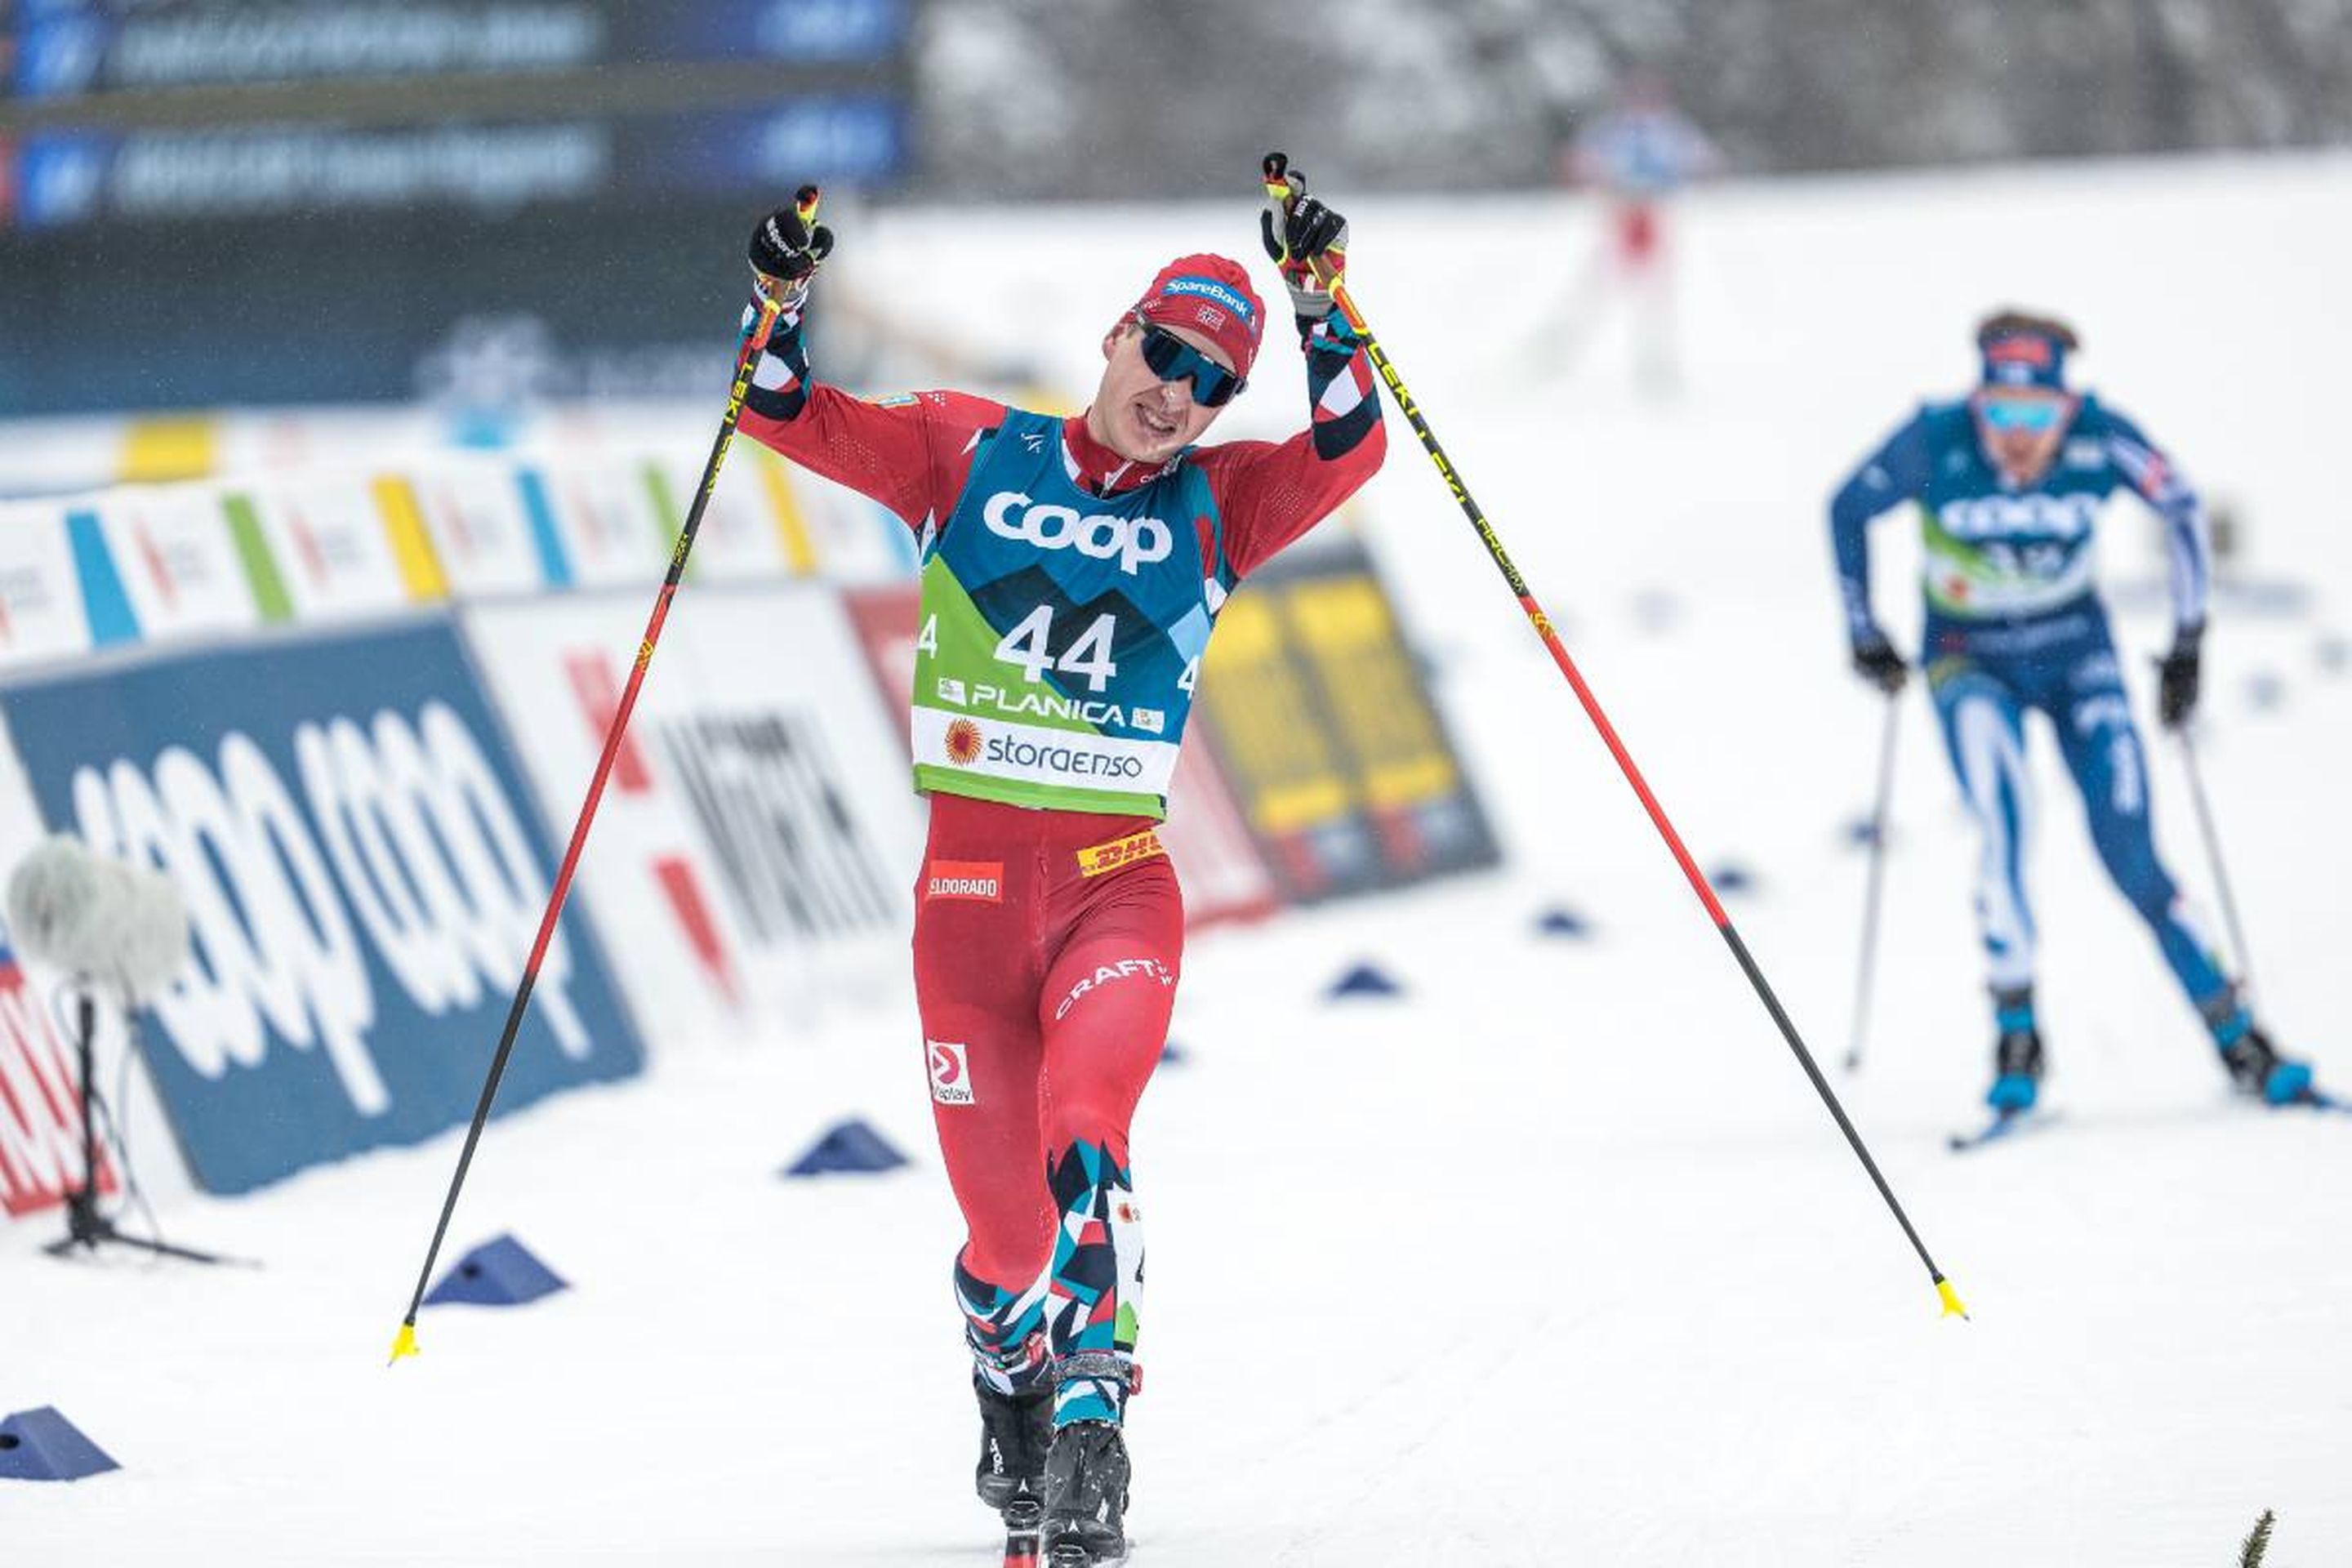 Krueger crossing the finish line: @Nordic Focus.